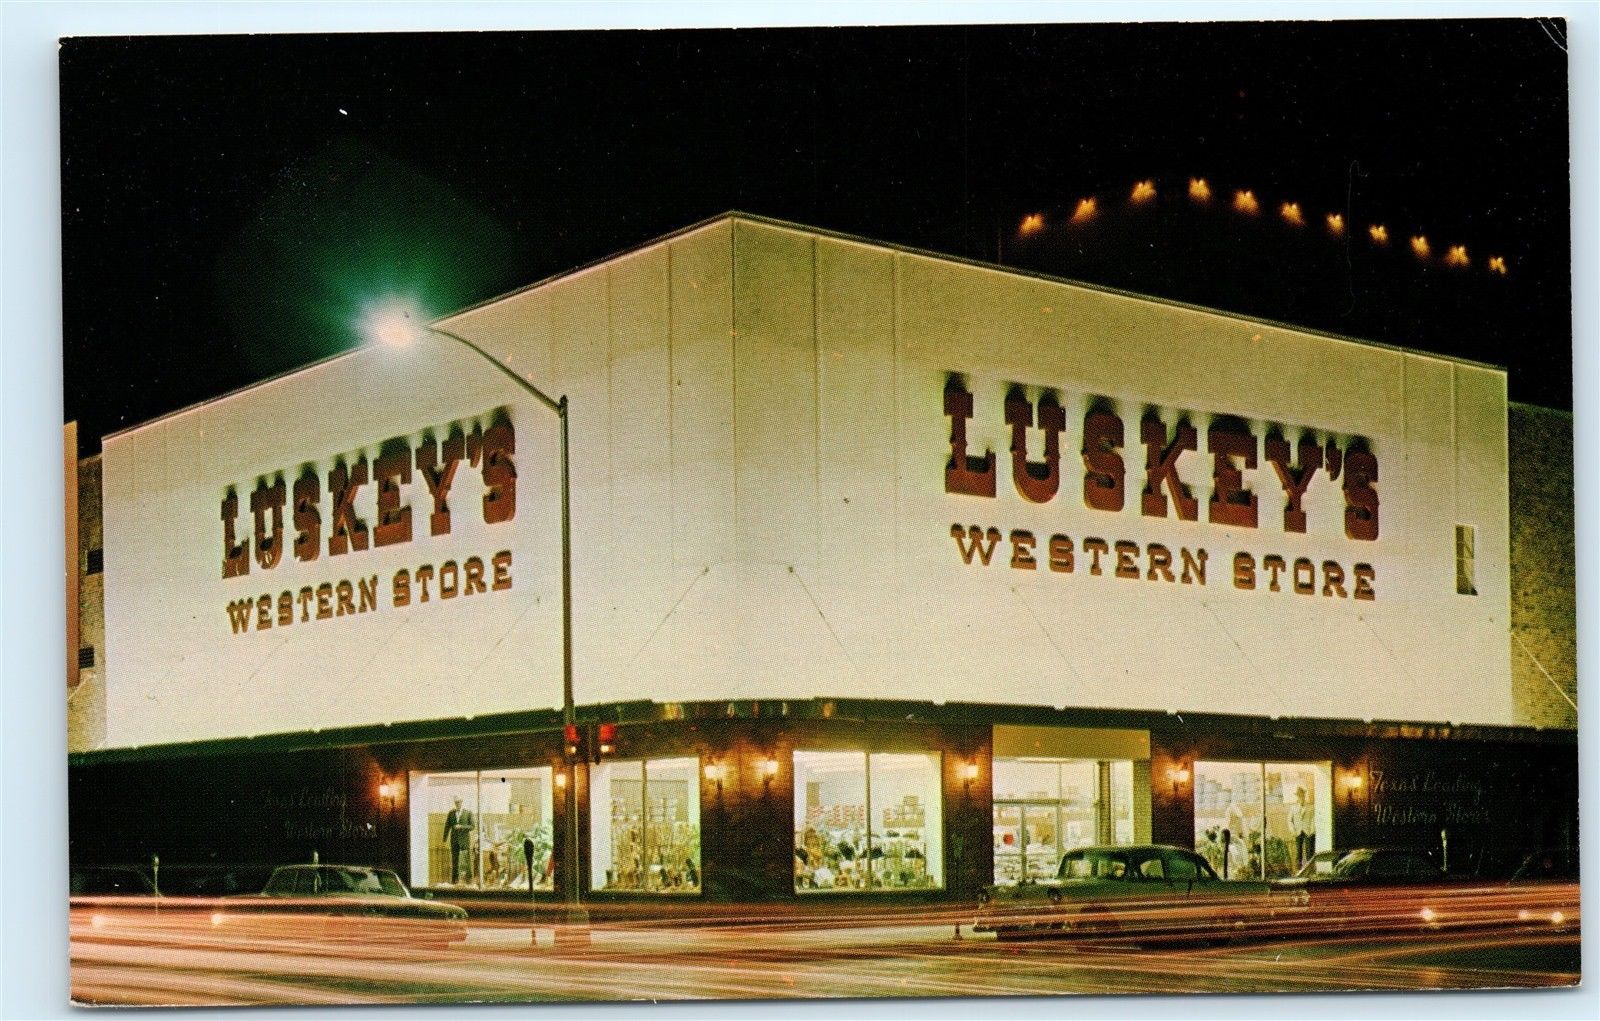 luskey's western wear